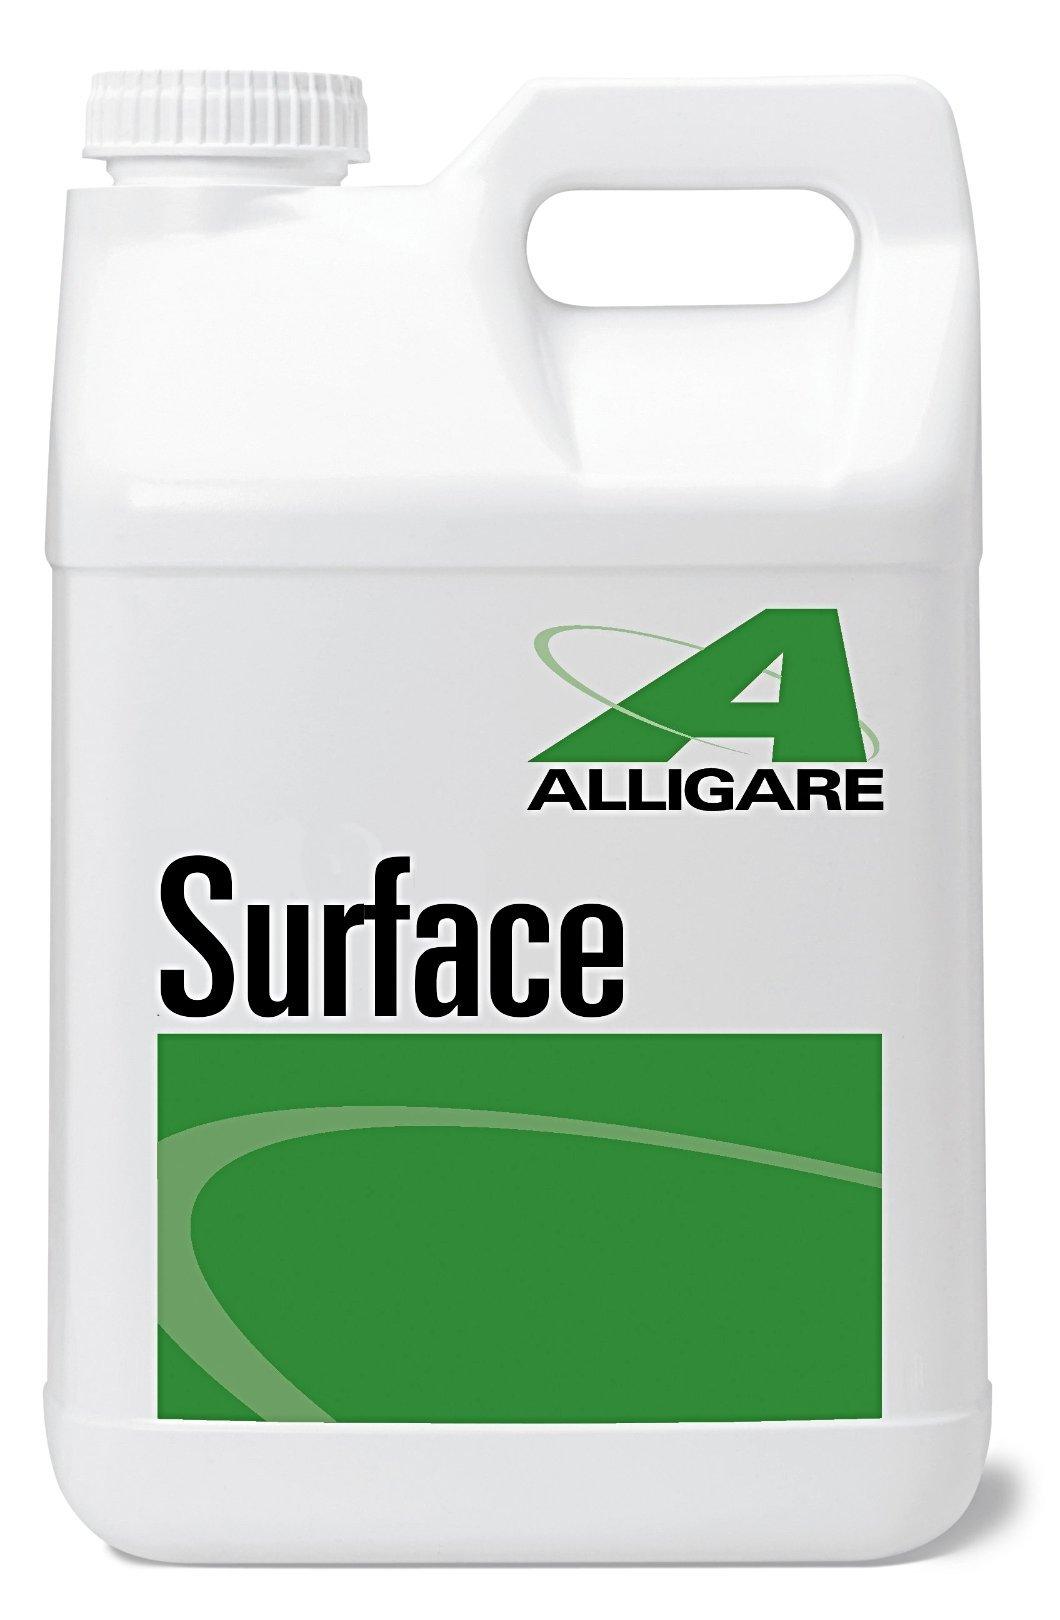 Surfactant - Surface Nonionic Surfactant For Herbicides